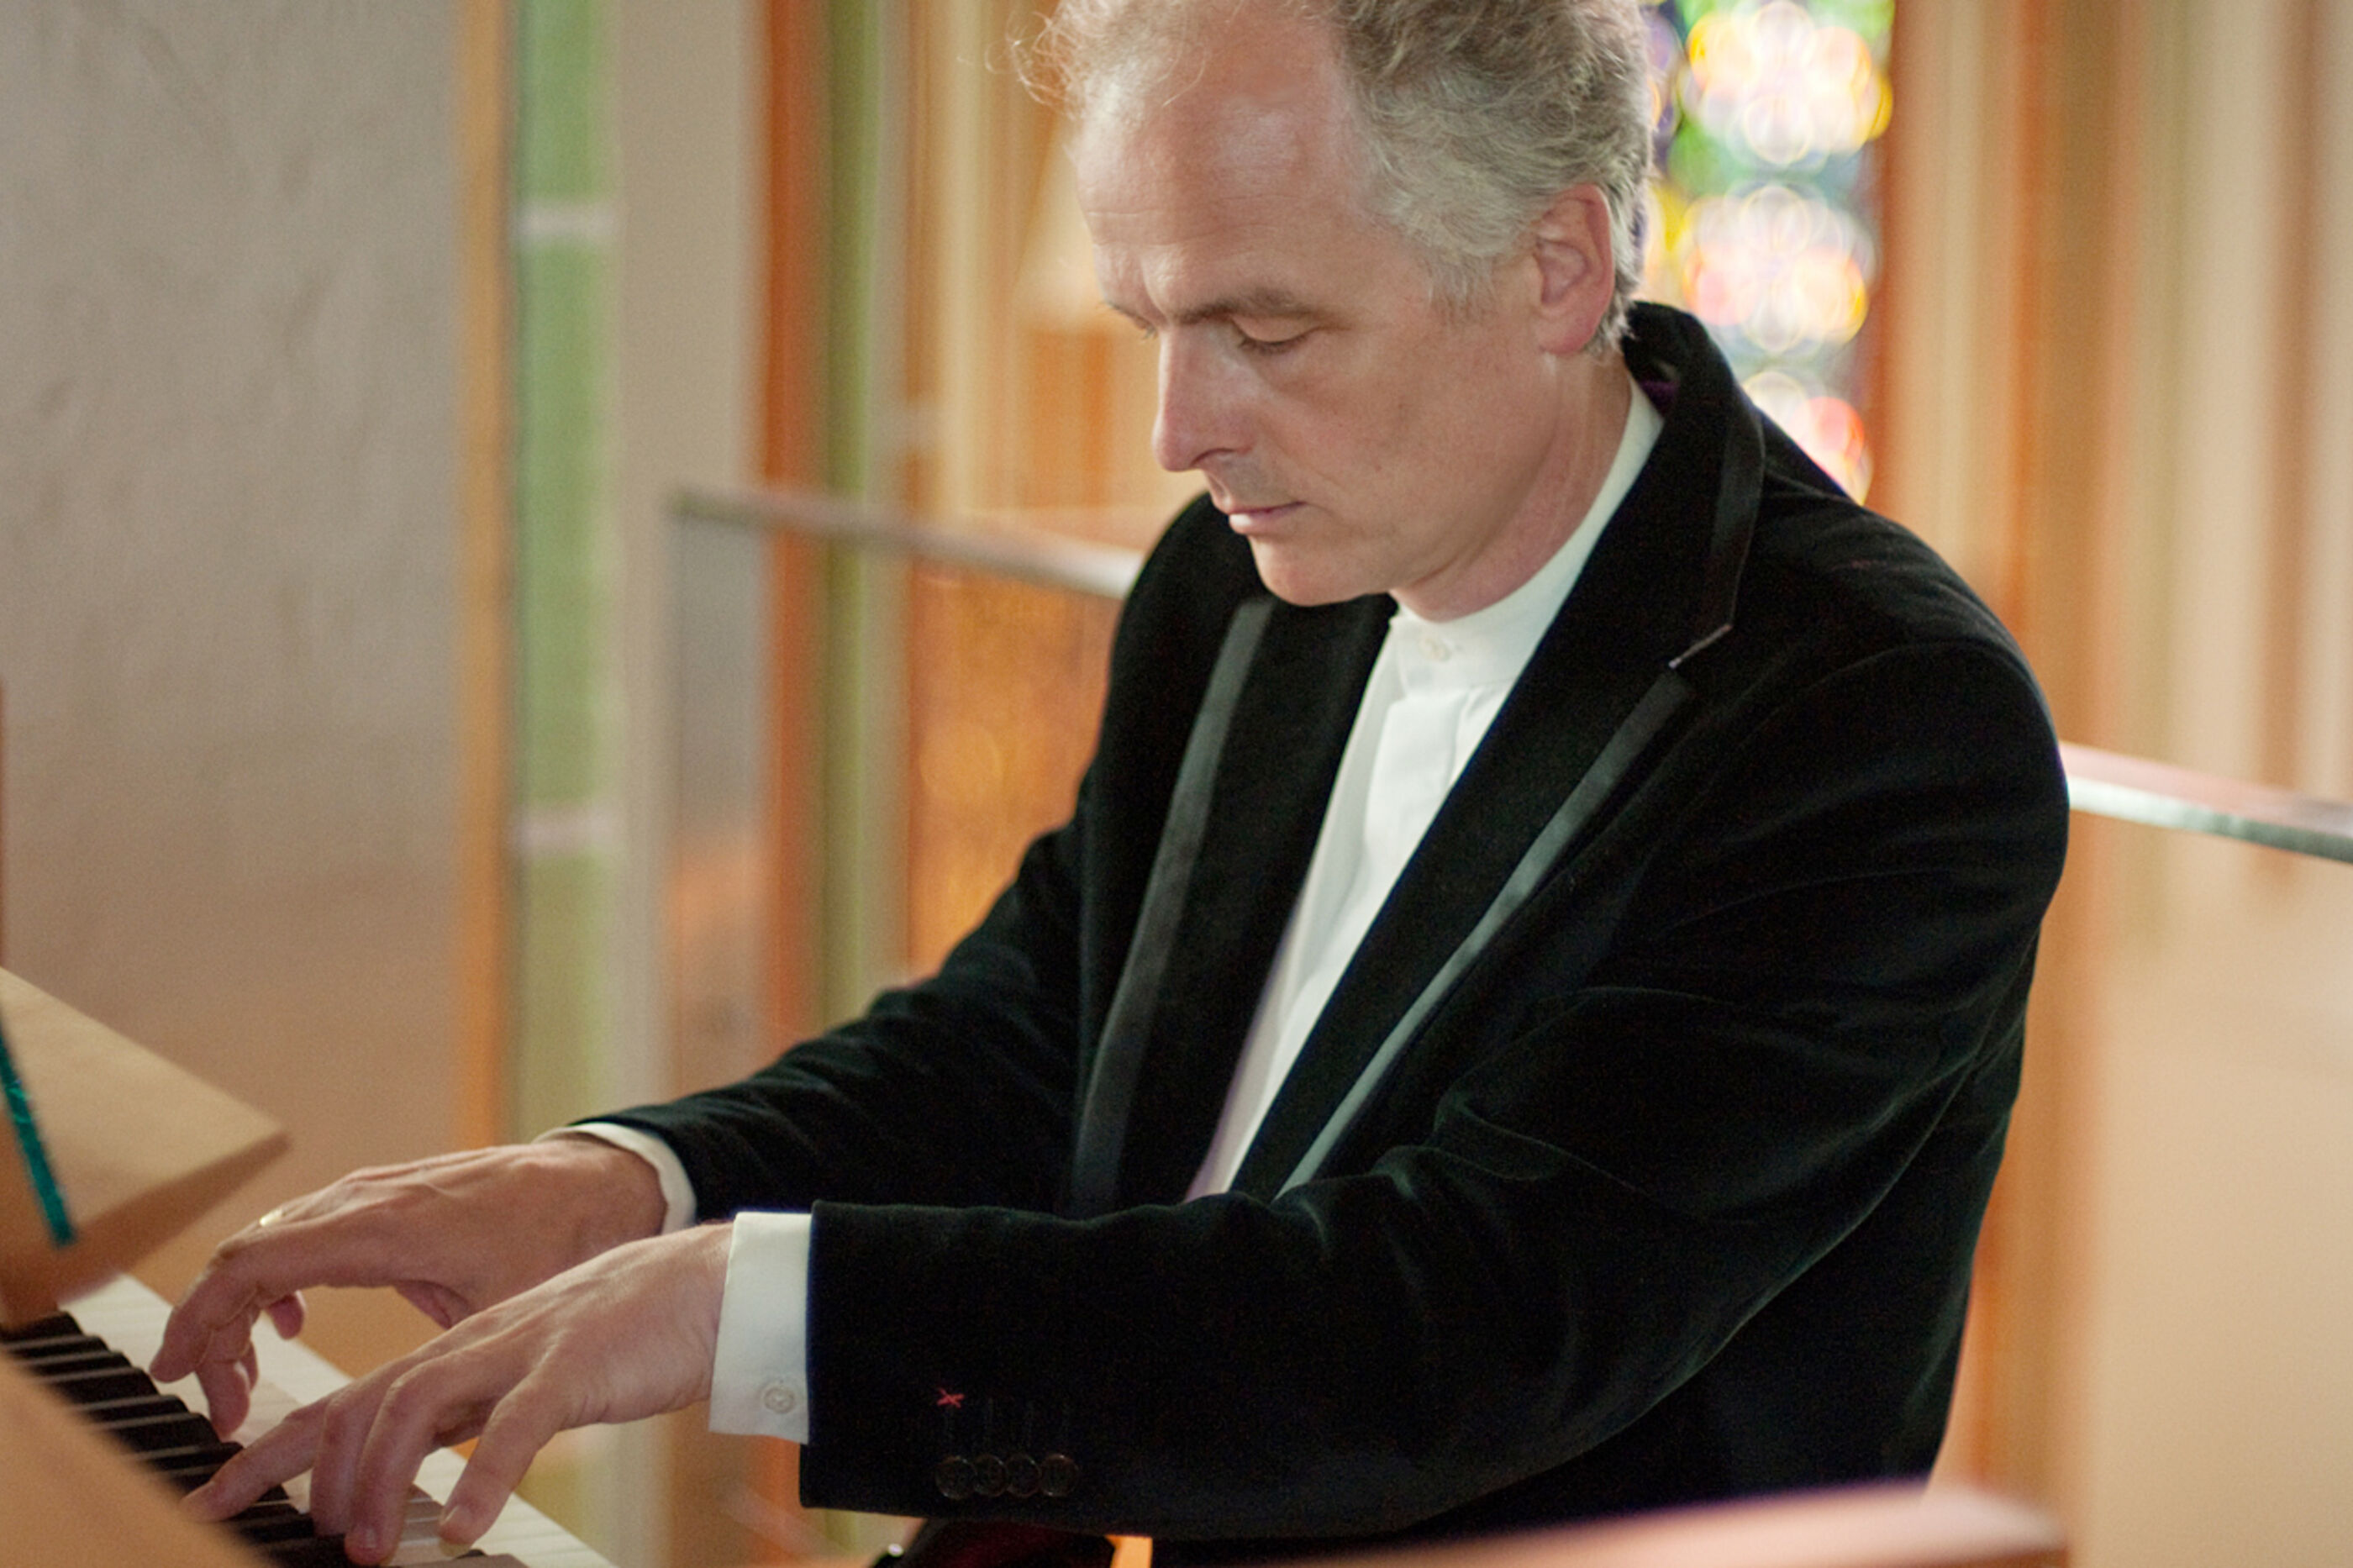 Ein Mann mit grauen Haaren spielt mit geschlossenen Augen die Orgel.